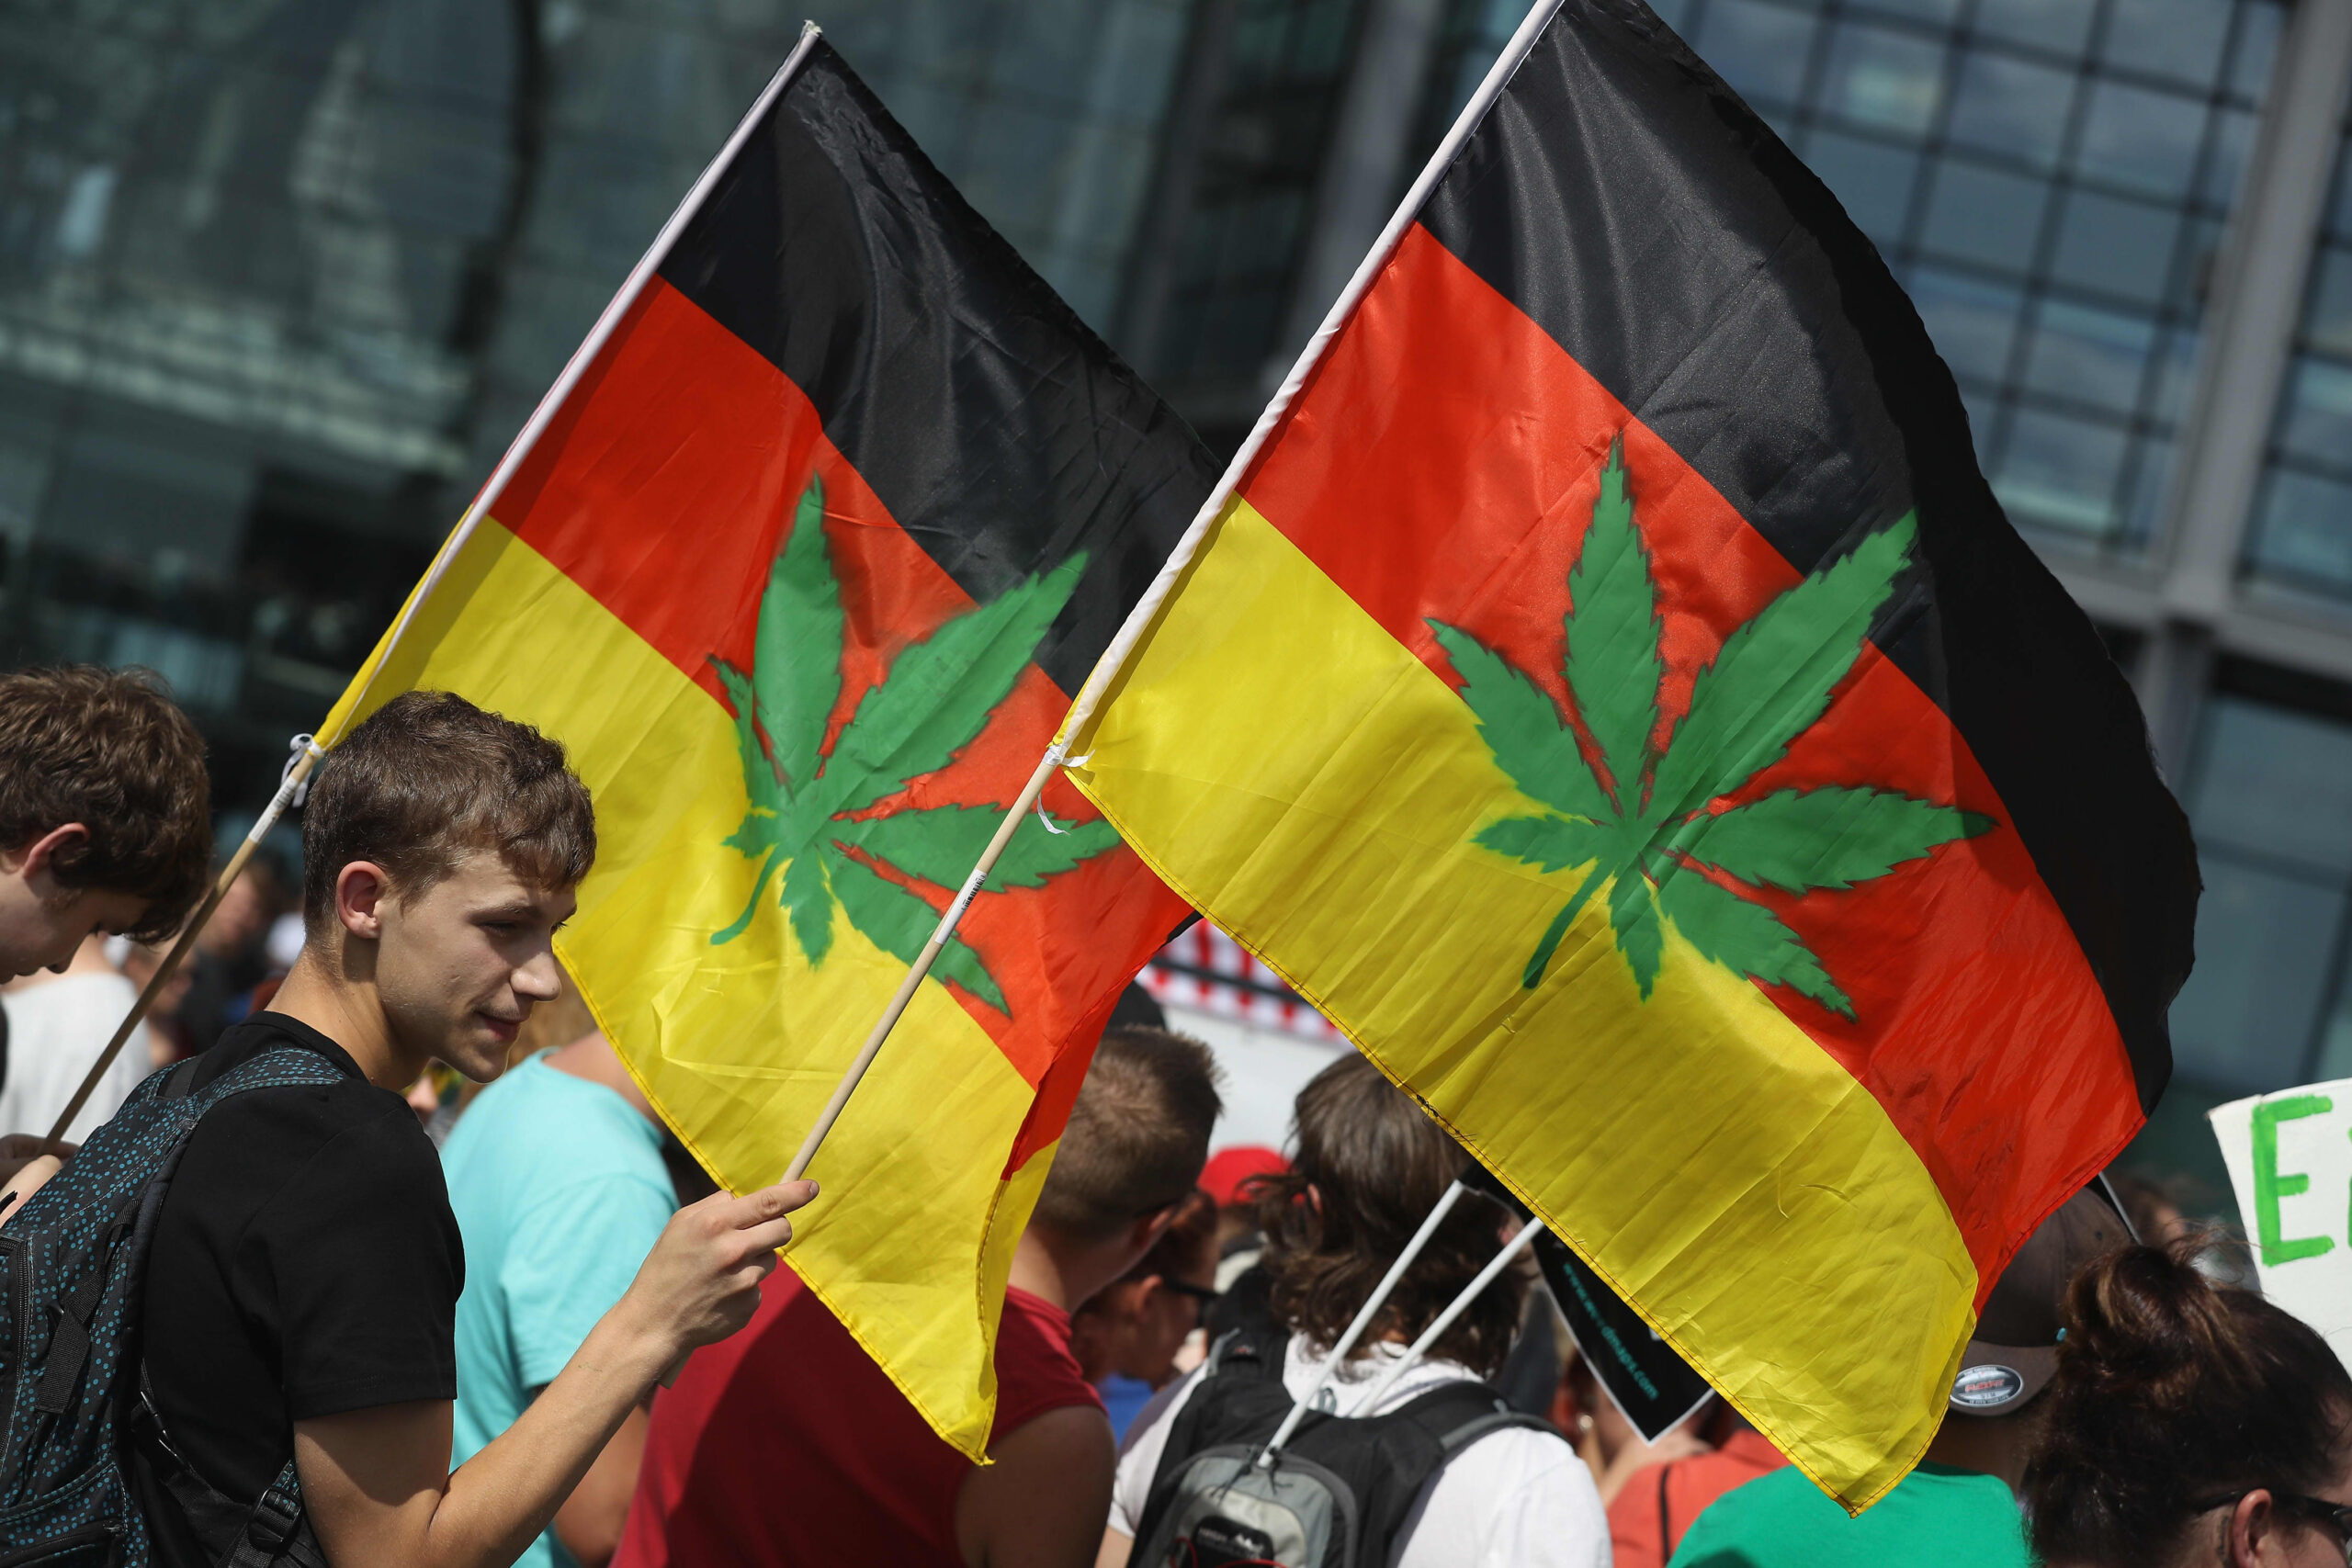 In Germania legalizzata la cannabis ricreativa